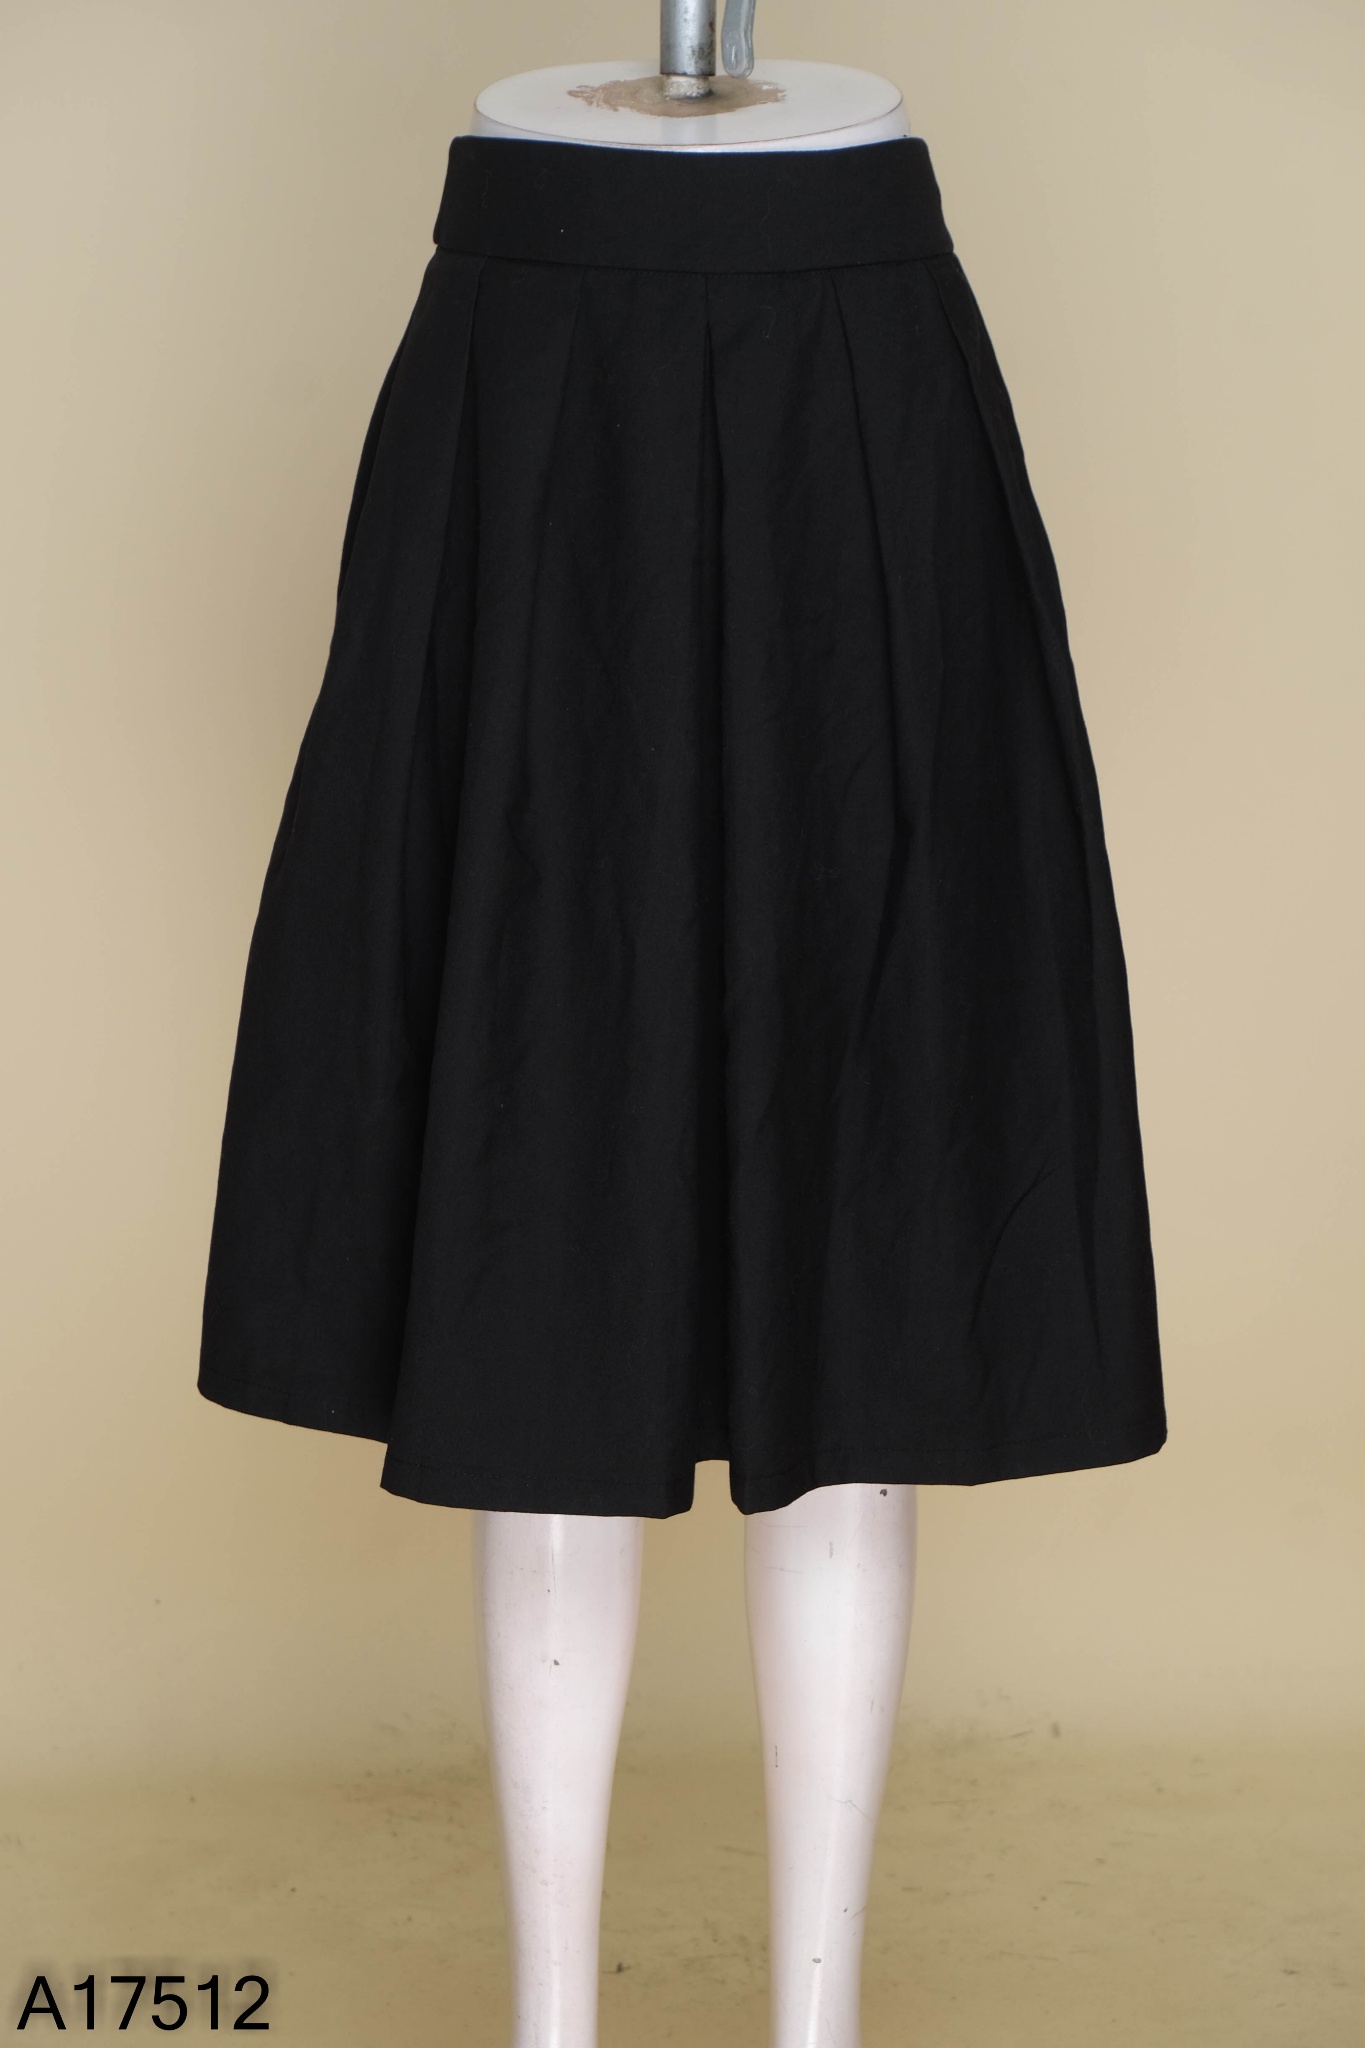 Bán sỉ Chân váy xếp ly dáng dài mầu đen cho học sinh size 5-15